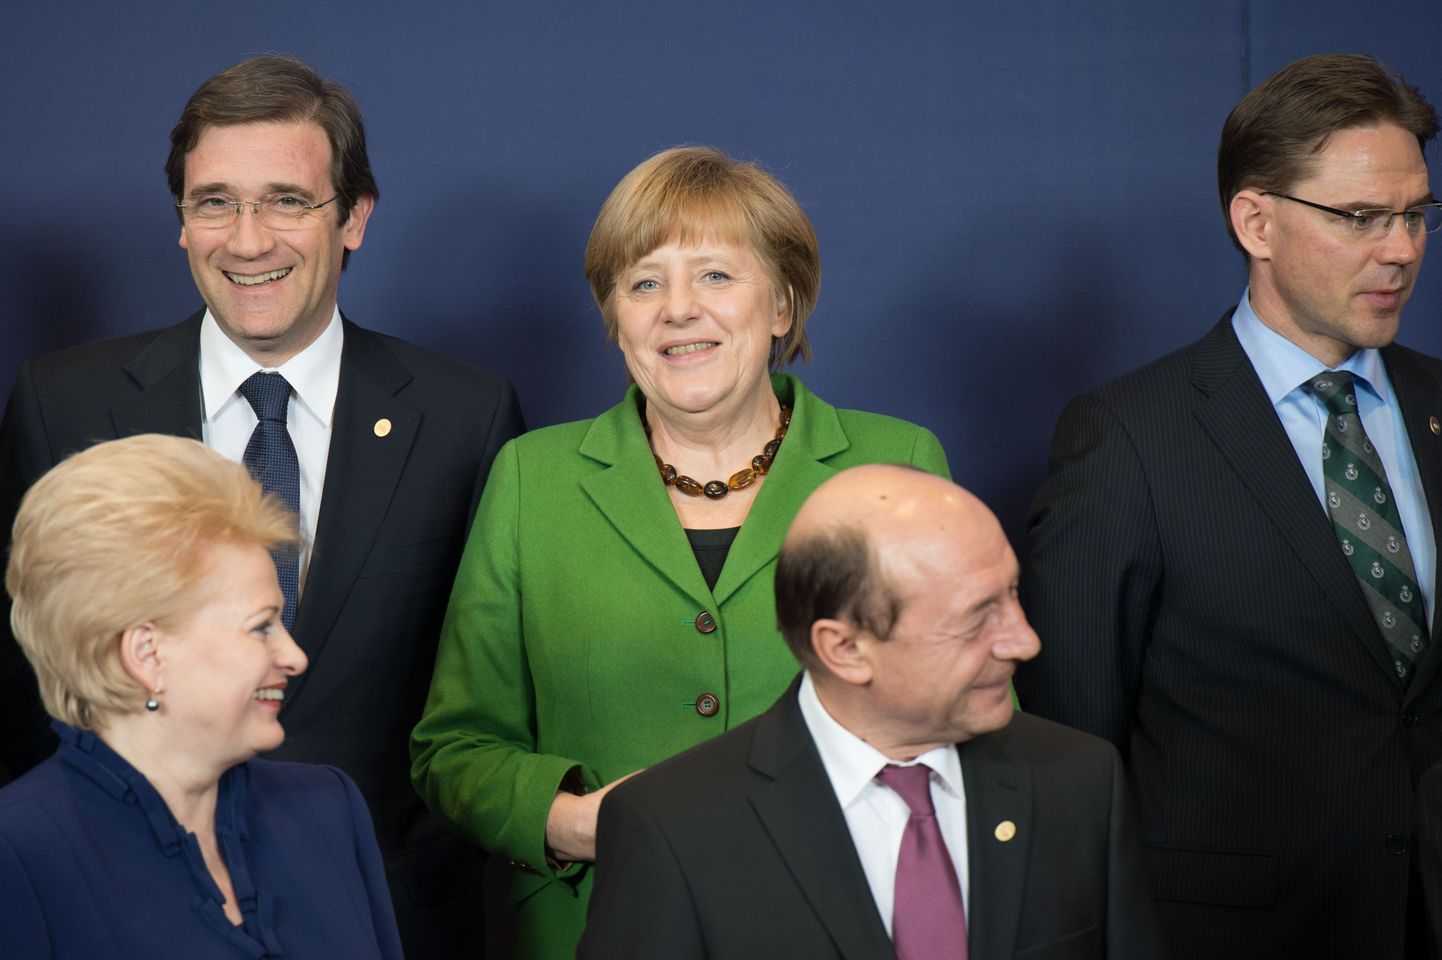 Leedu president Dalia Grybauskaite, Rumeenia president Traian Basescu, Portugali peaminister Pedro Passos Coelho, Saksamaa kantsler Angela Merkel ja Soome peaminister Jyrki Katainen